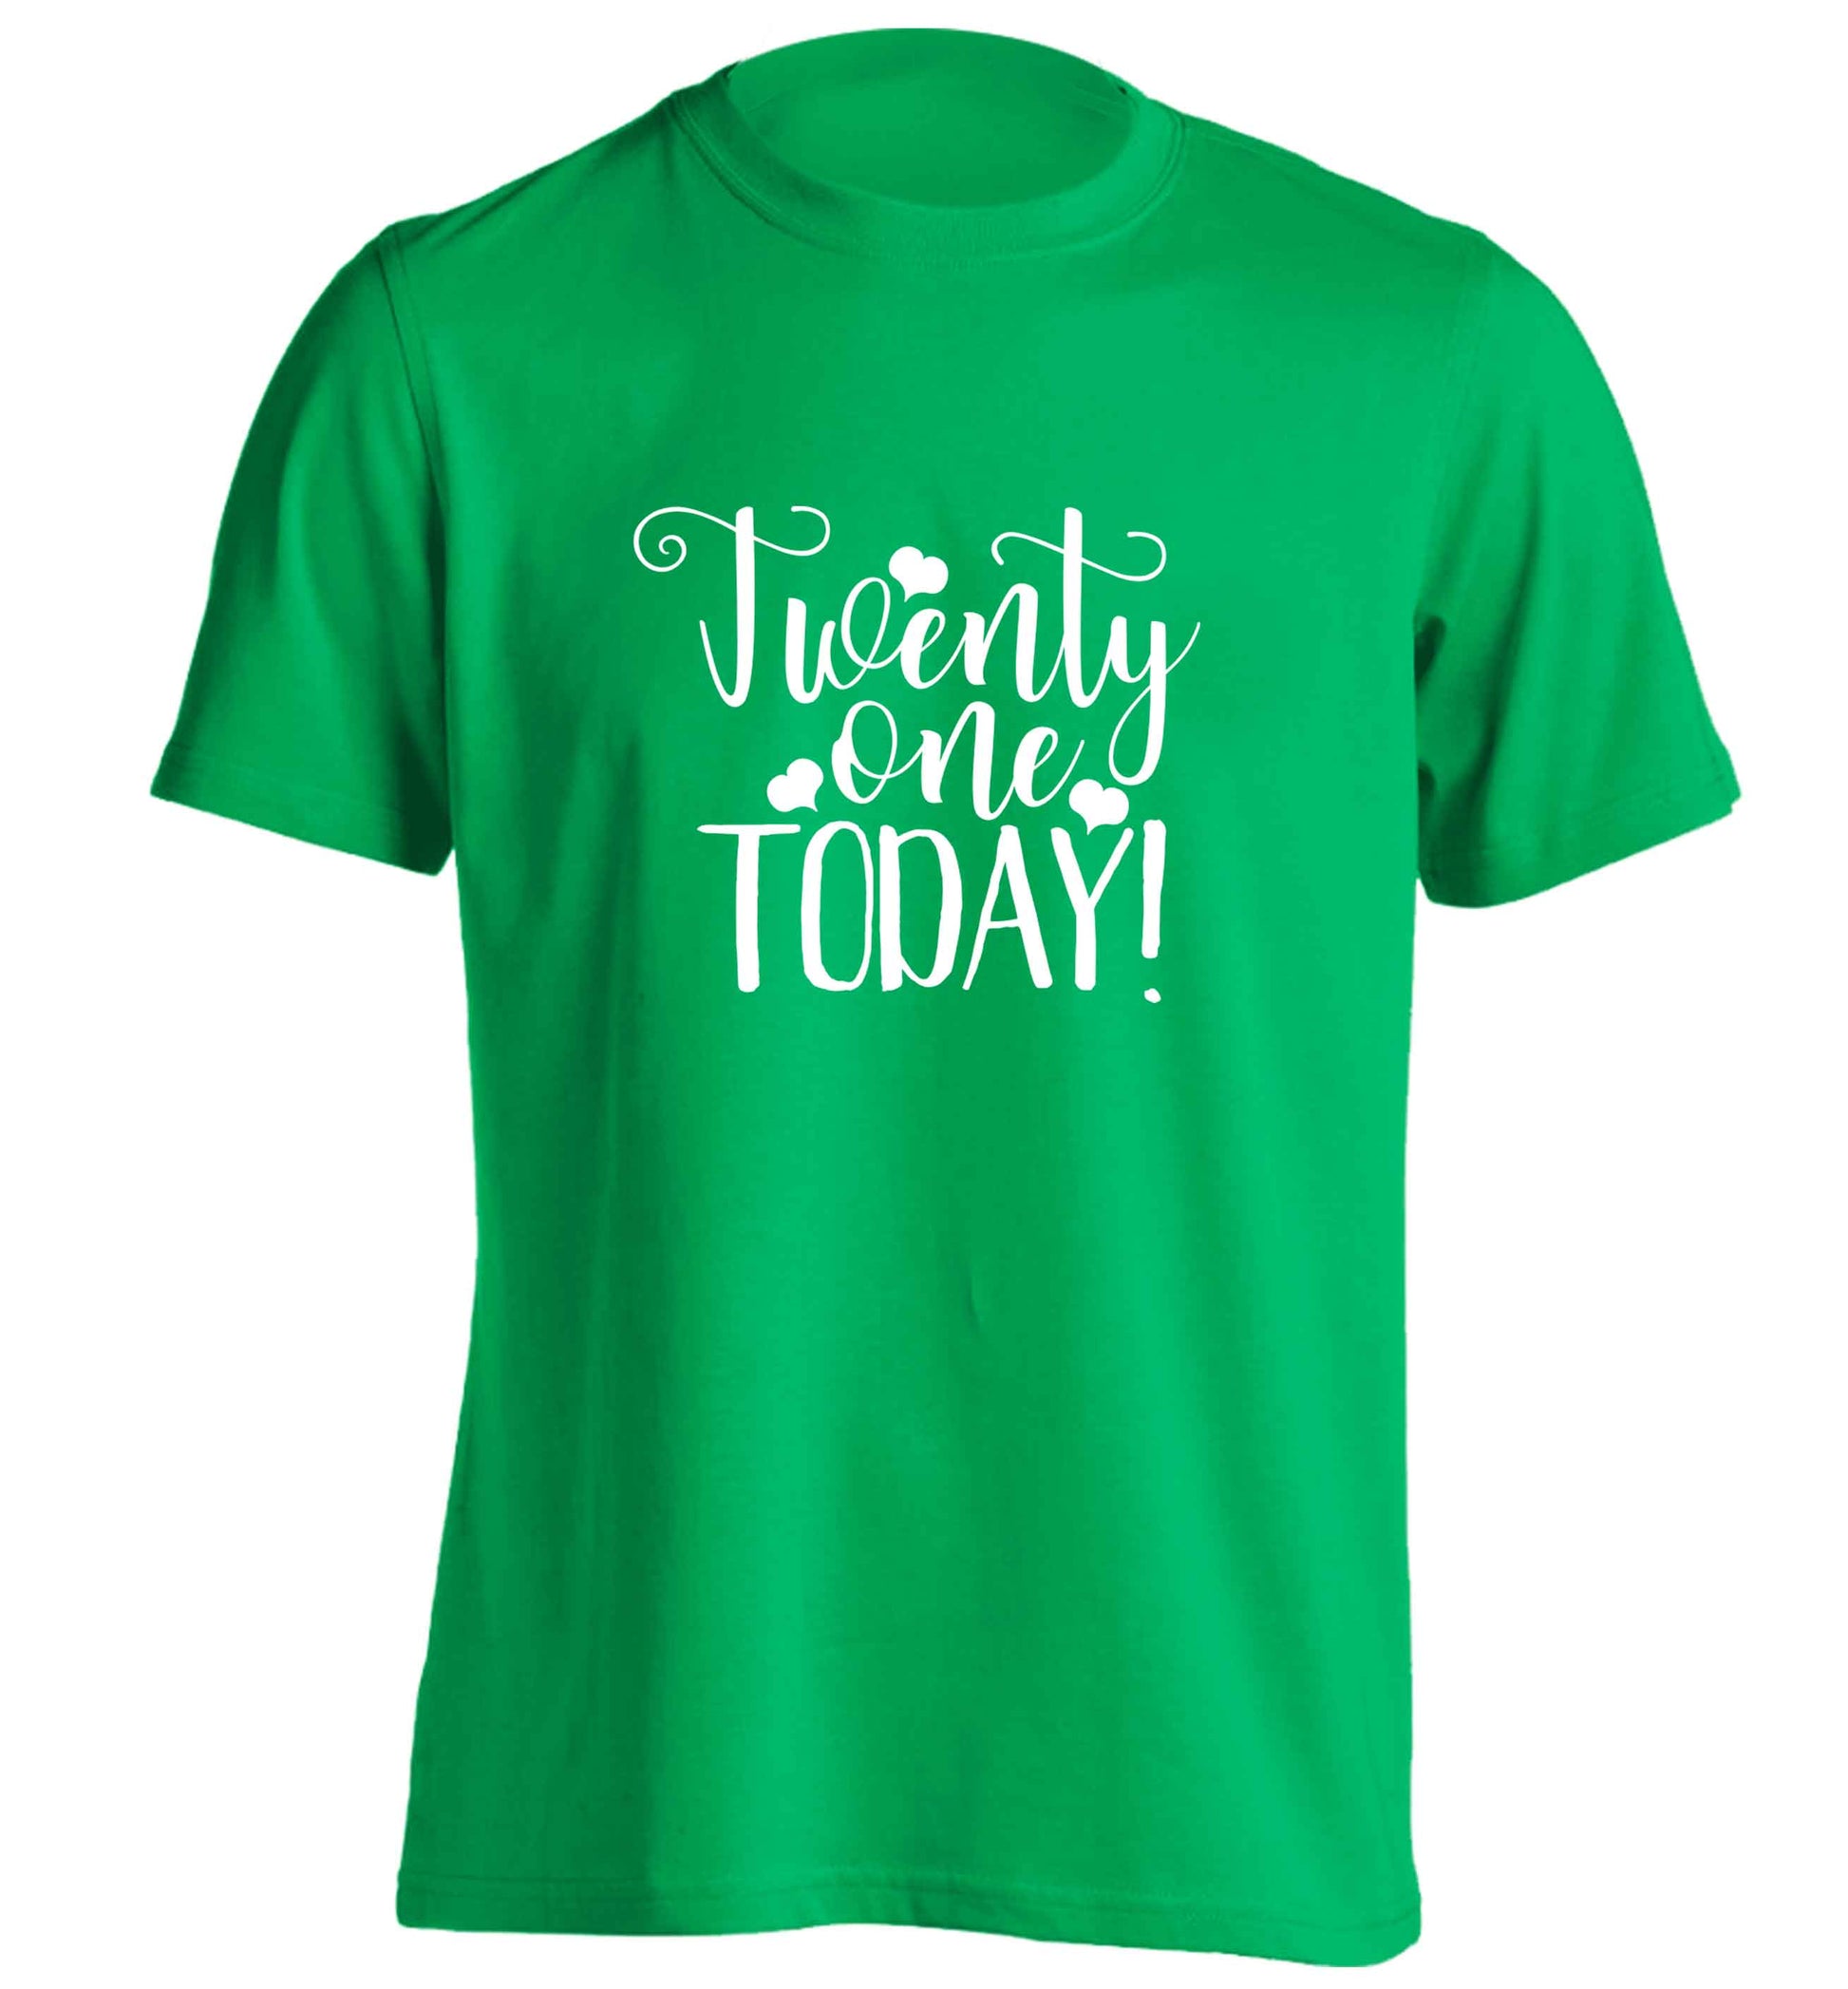 Twenty one today!adults unisex green Tshirt 2XL